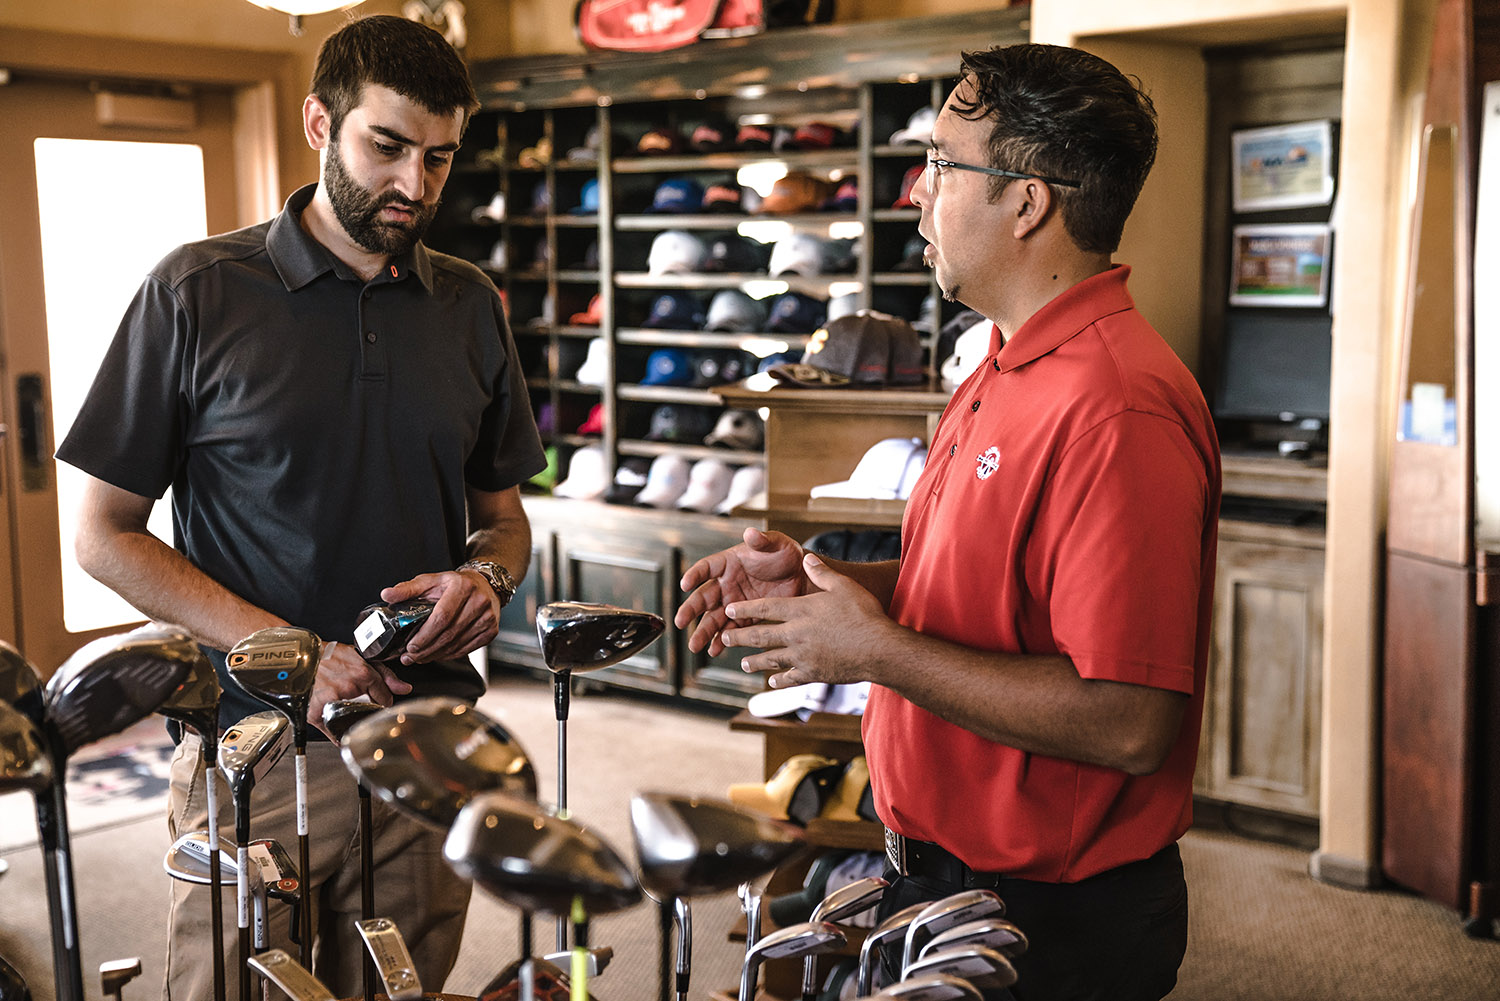 Två män diskuterar möjligen passersystem och dörrautomatik, men antagligen klubbor, eftersom de befinner sig i en butik med golfutrustning.